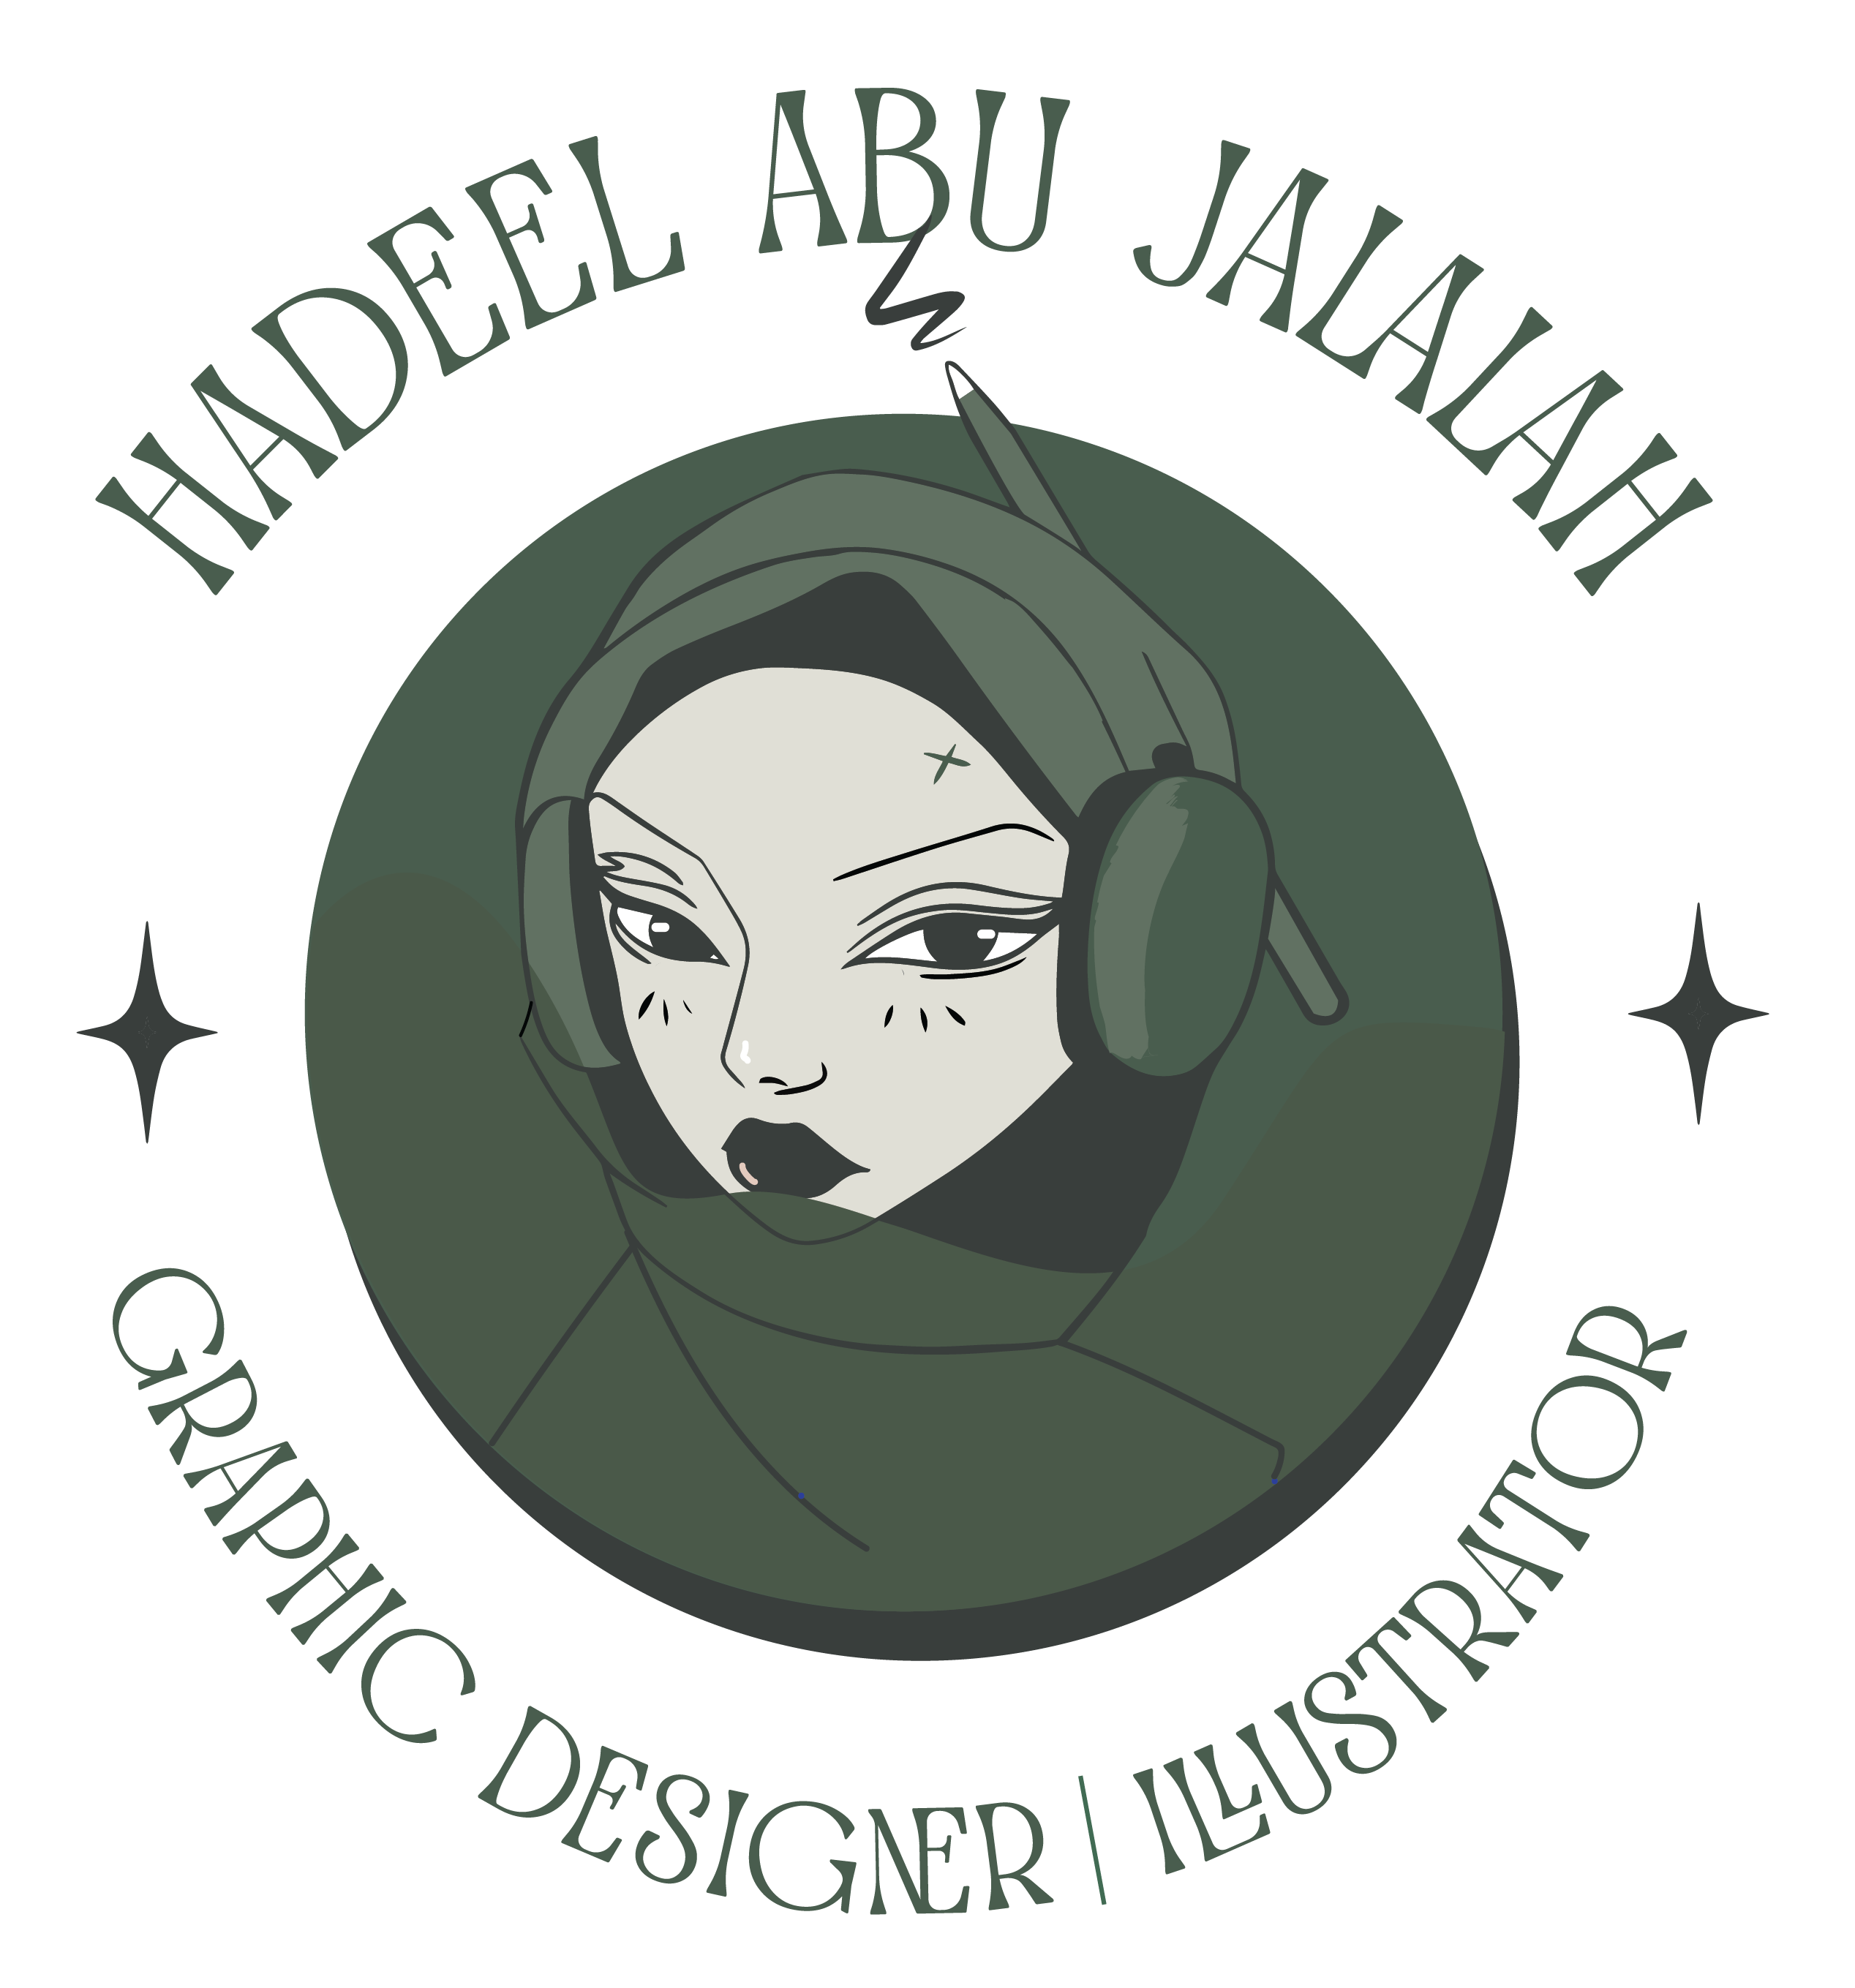 Hadeel Abu Jalalah